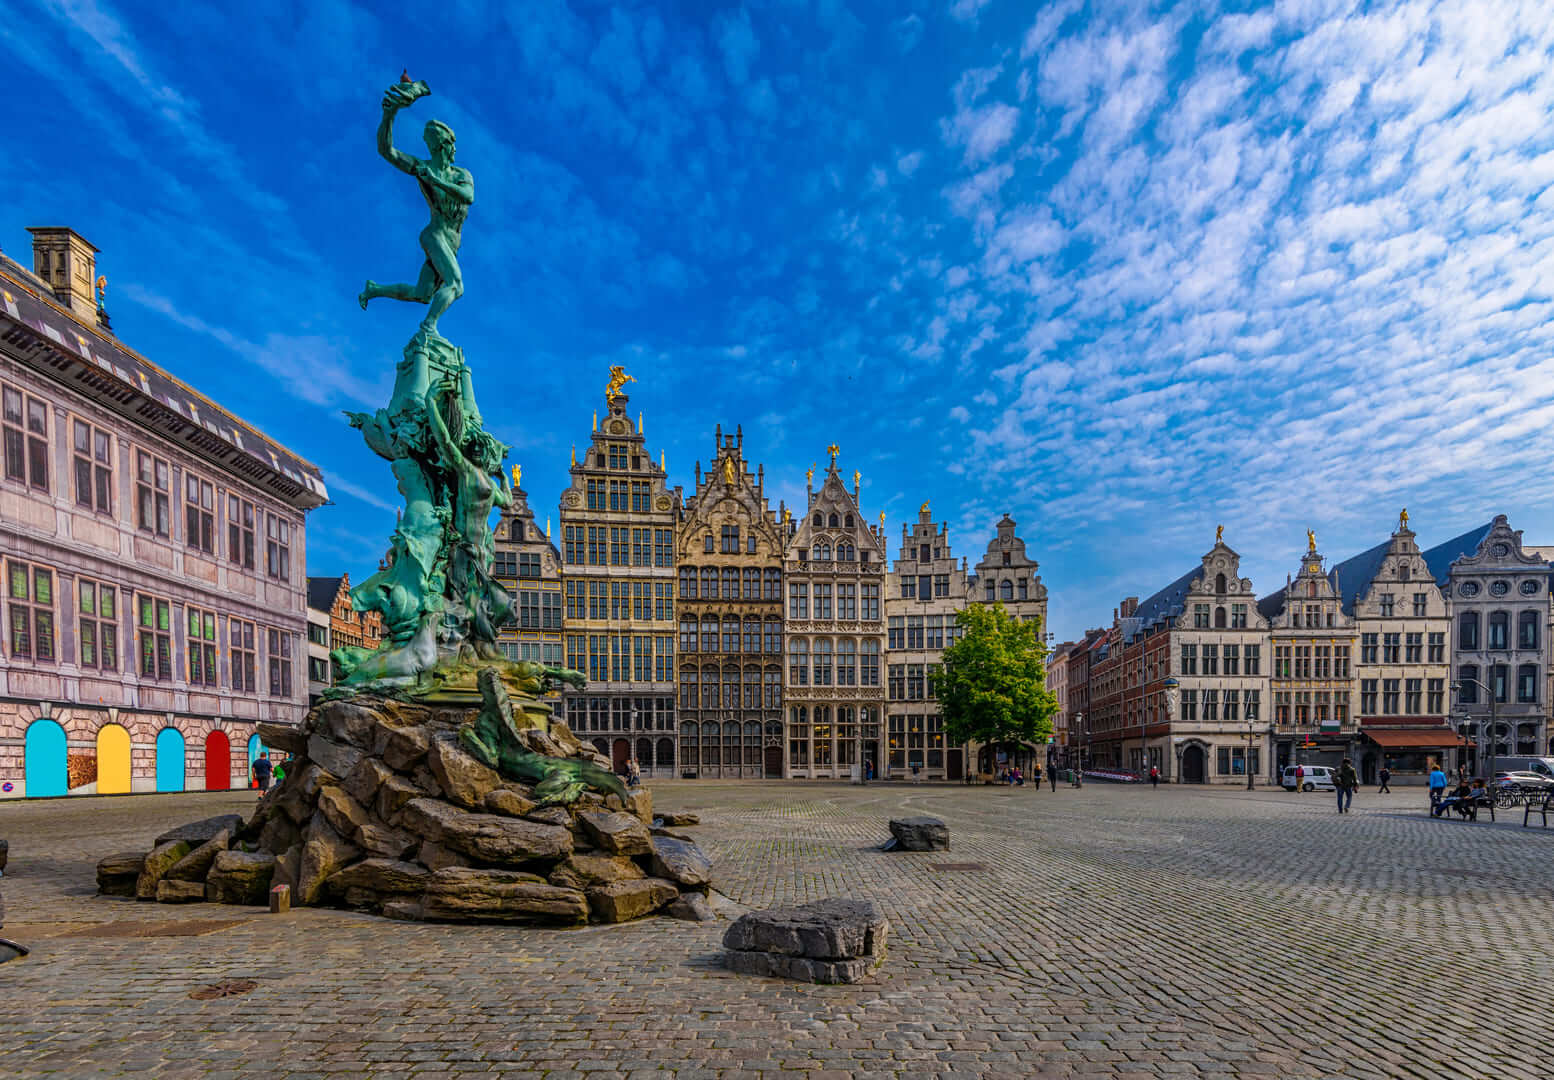 Il Grote Markt (Grande Piazza del Mercato) di Antwerpen (Anversa), Belgio. È una piazza situata nel cuore del vecchio quartiere della città di Anversa. Paesaggio urbano di Anversa.